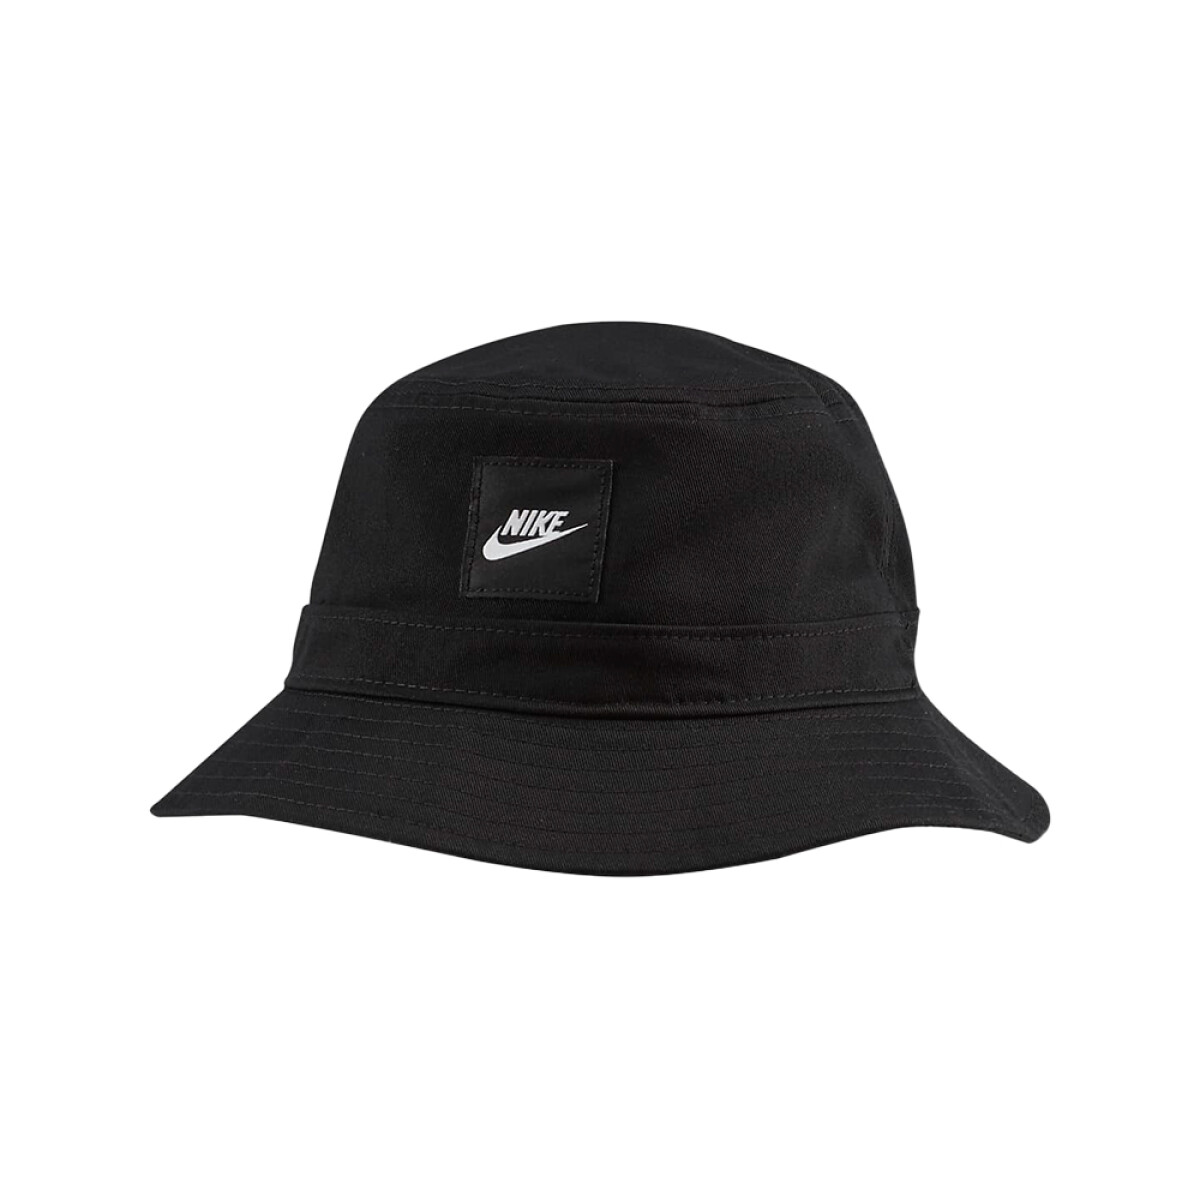 NIKE SPORTSWEAR BUCKET HAT - Black 